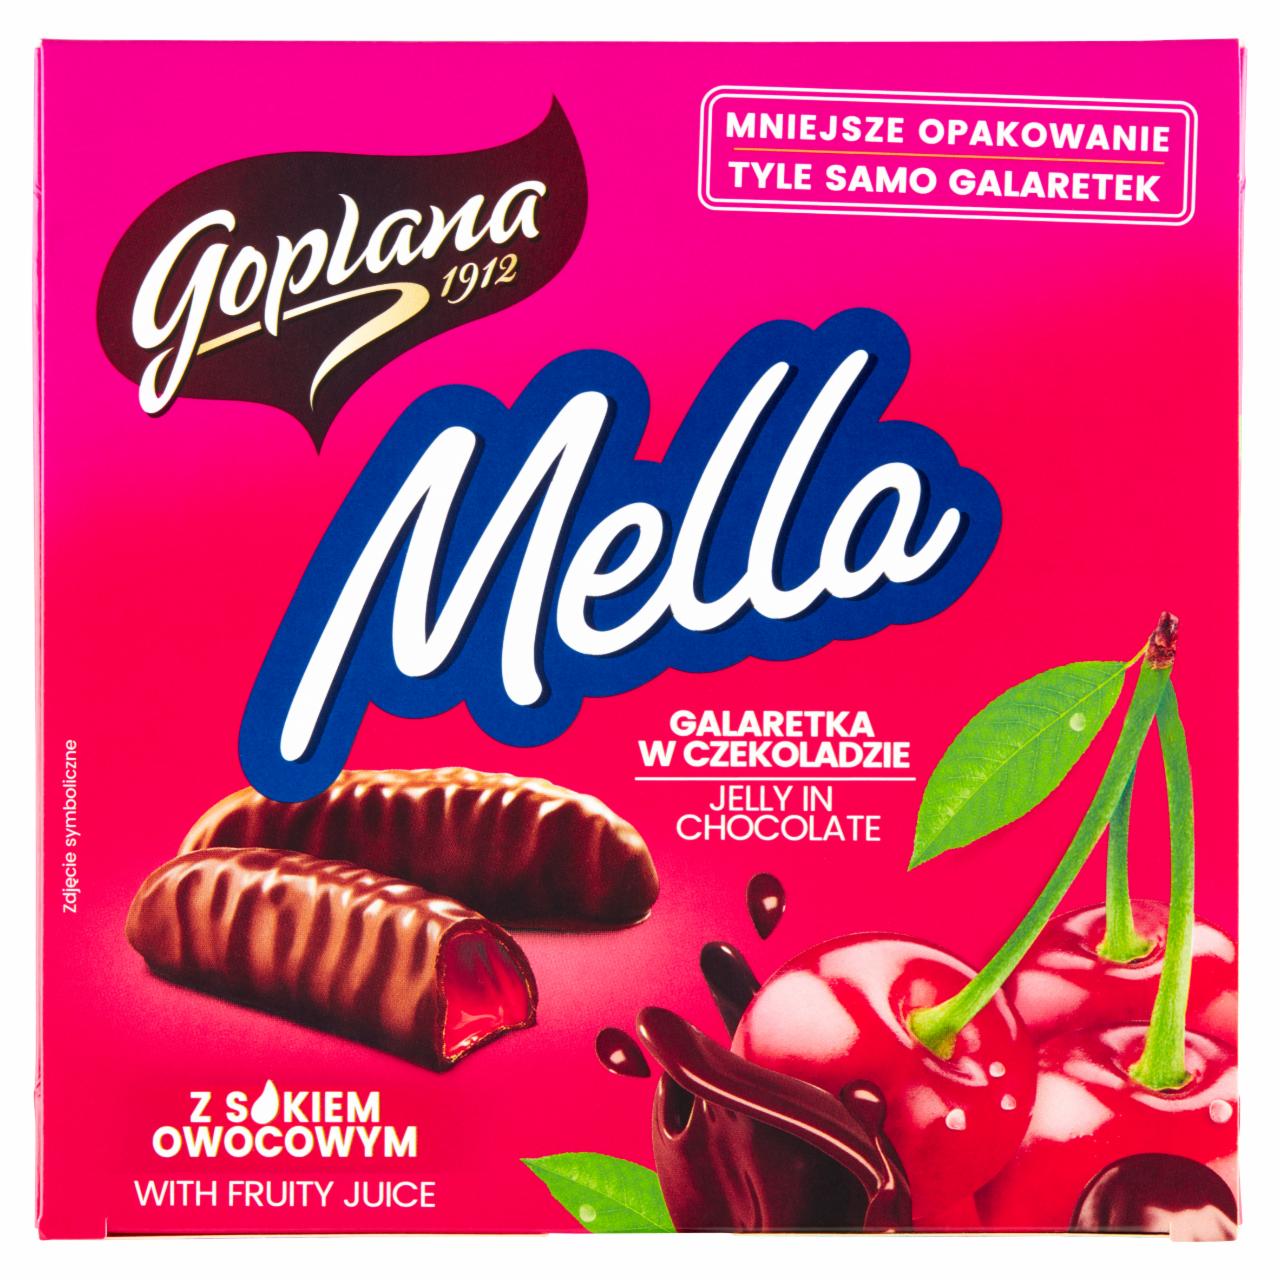 Zdjęcia - Goplana Mella Galaretka w czekoladzie o smaku wiśniowym 190 g